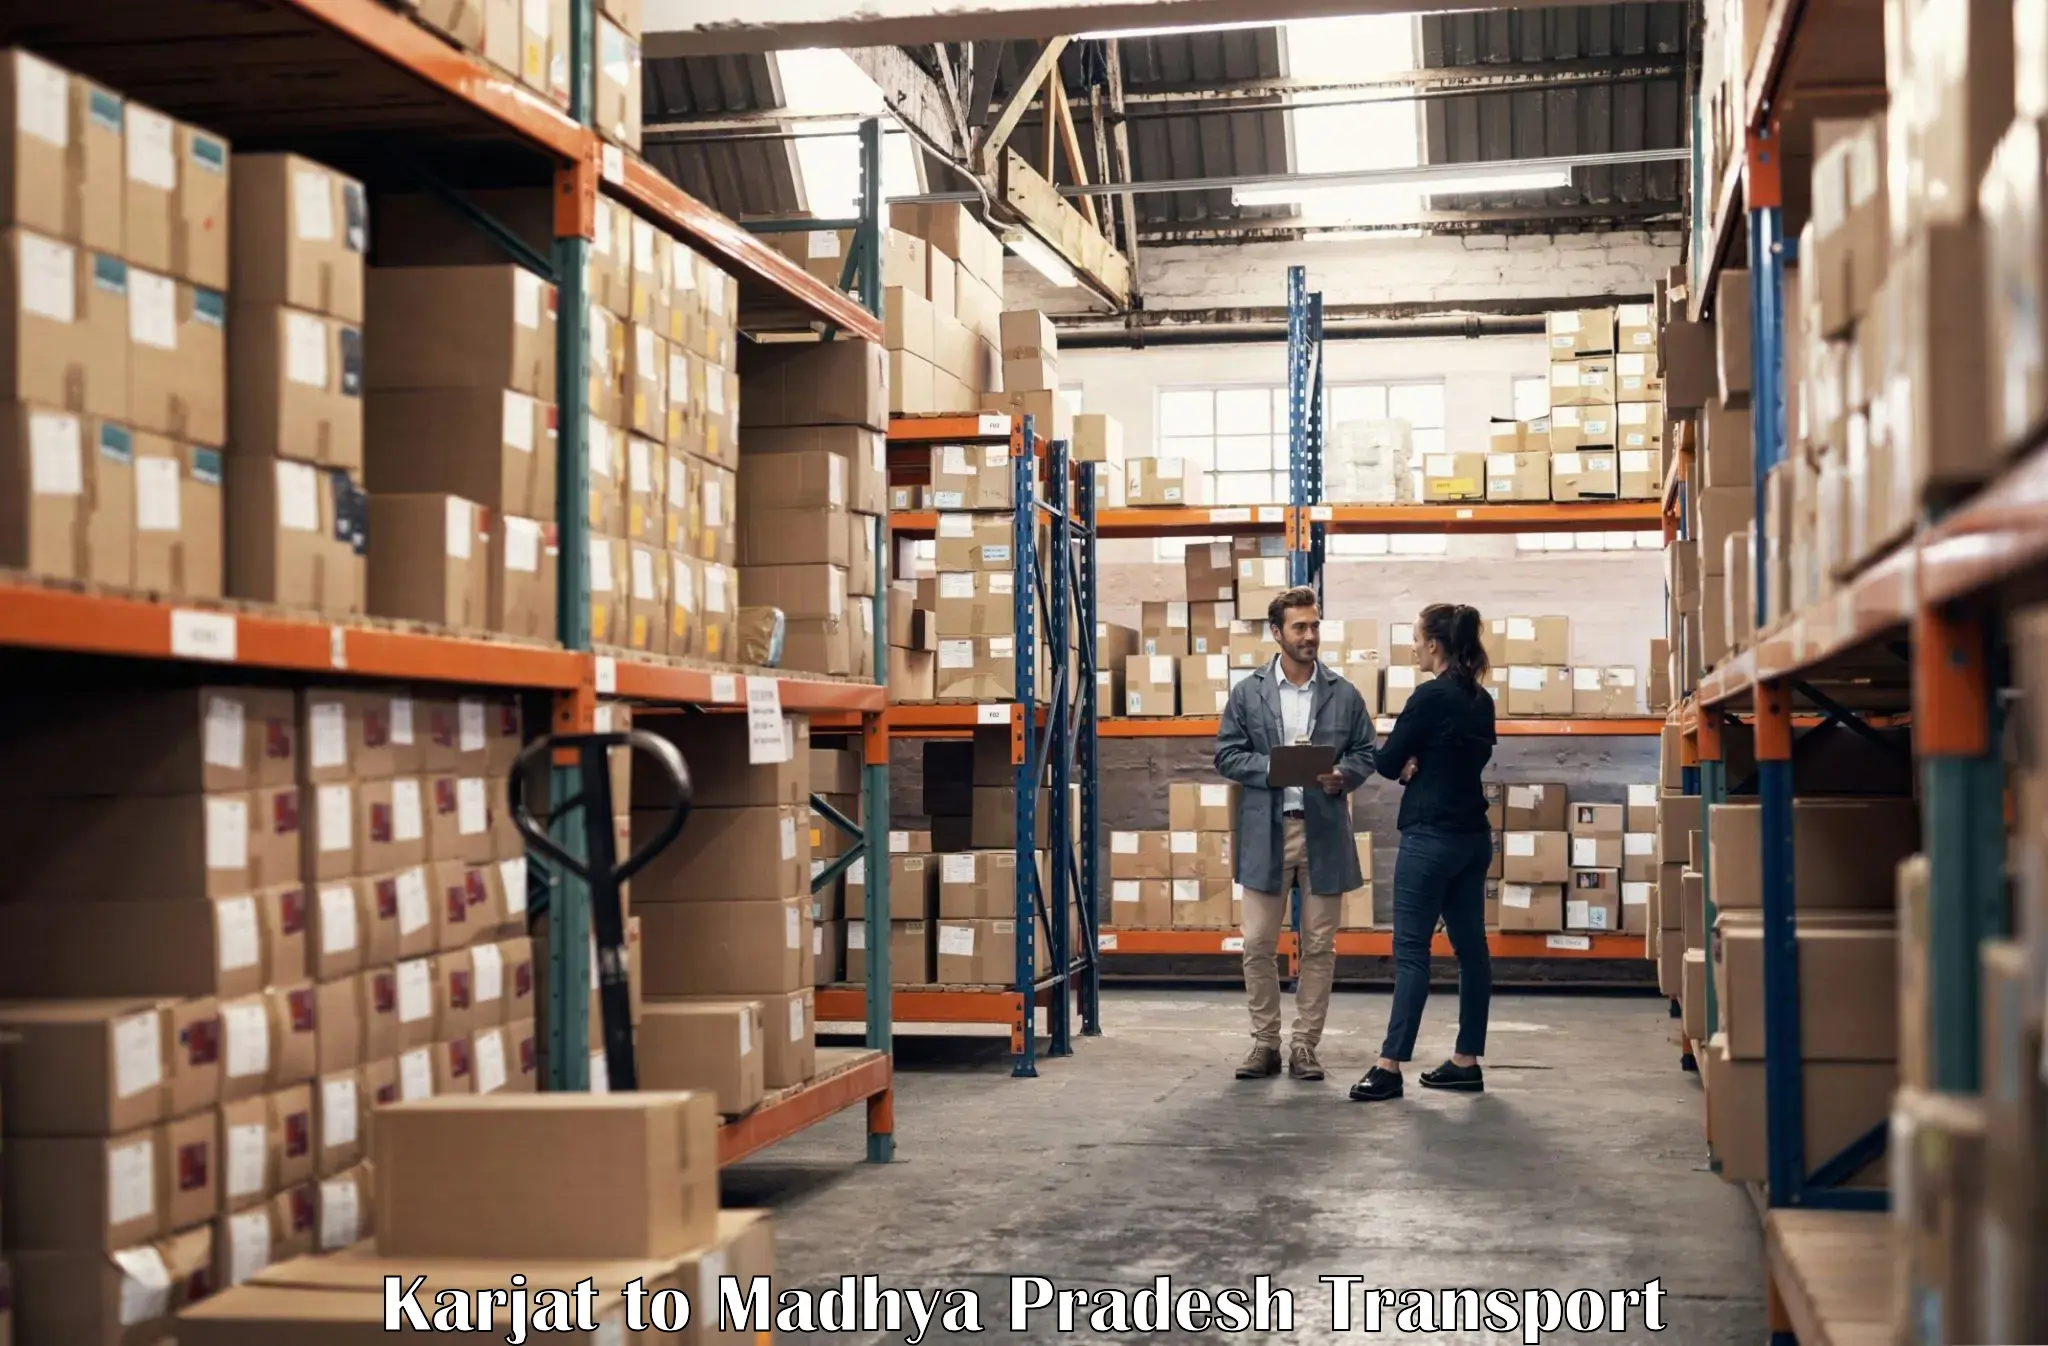 Shipping partner Karjat to Mandideep